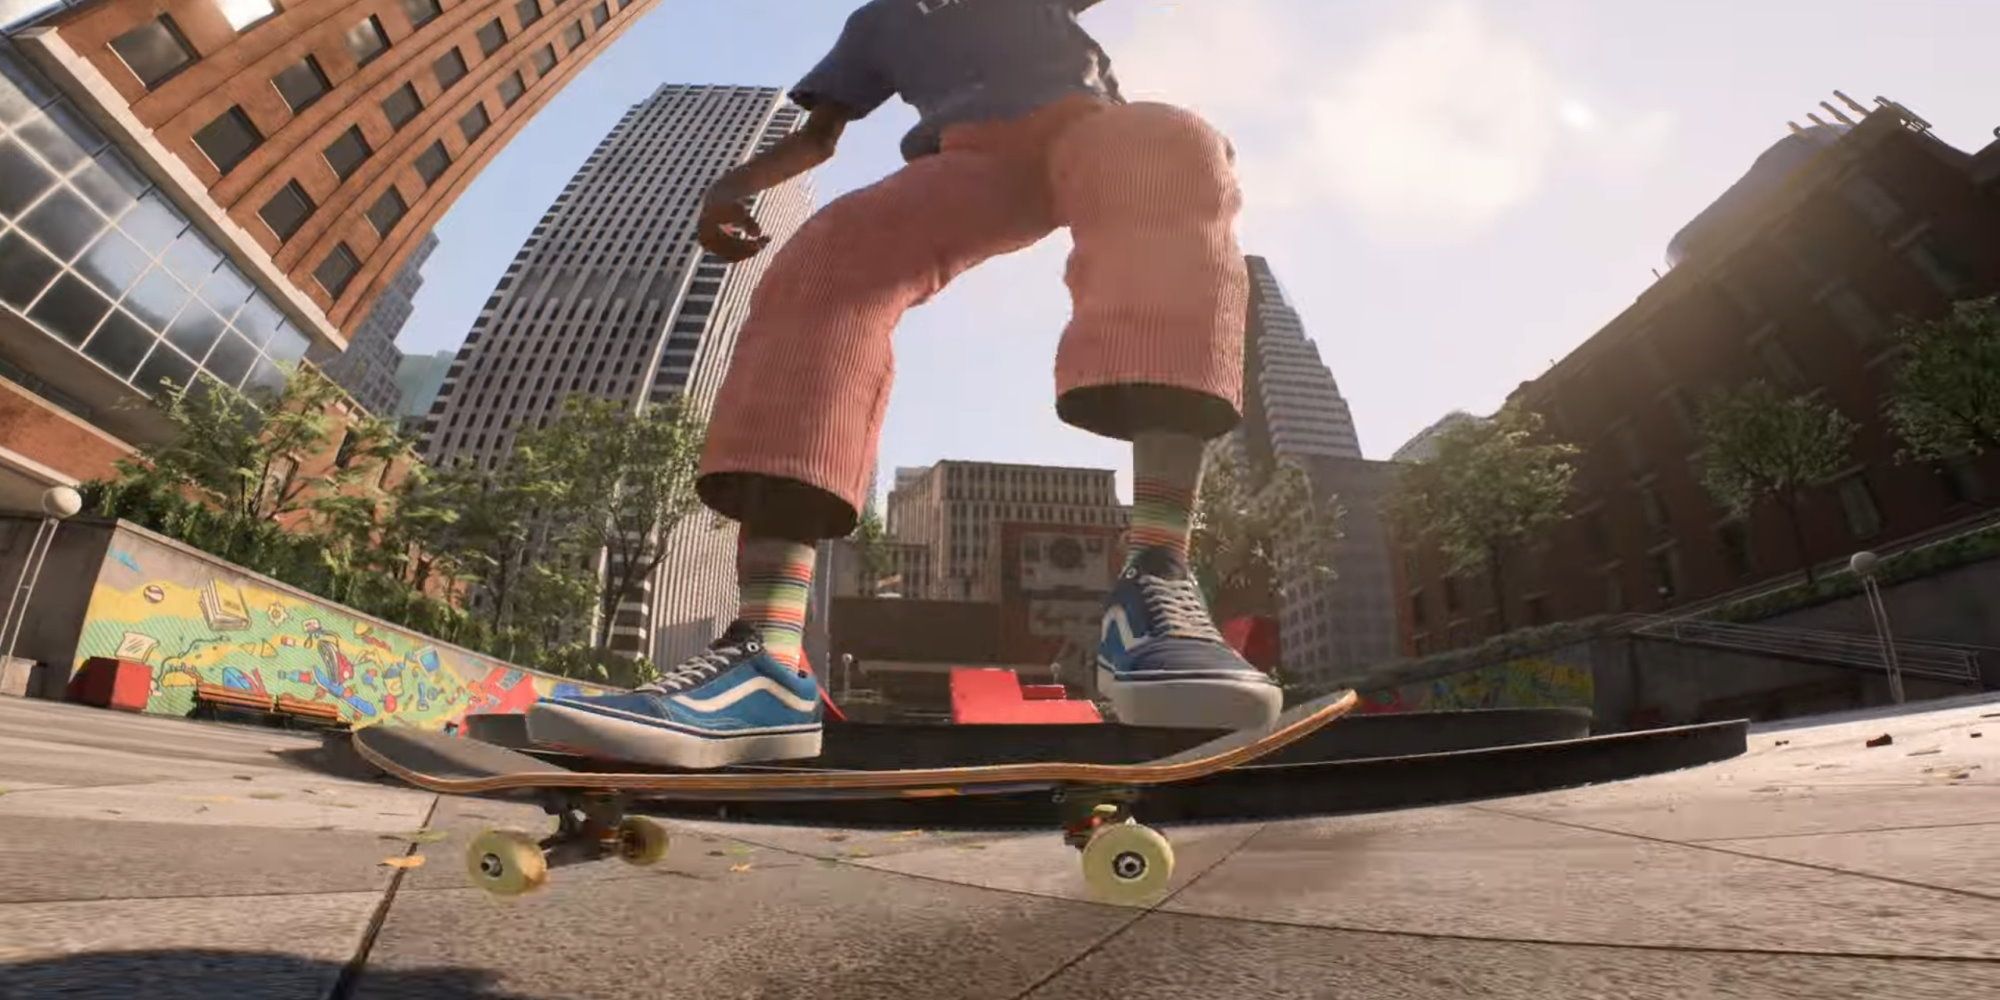 New Skate trailer shows 'Pre-Pre-Alpha' gameplay